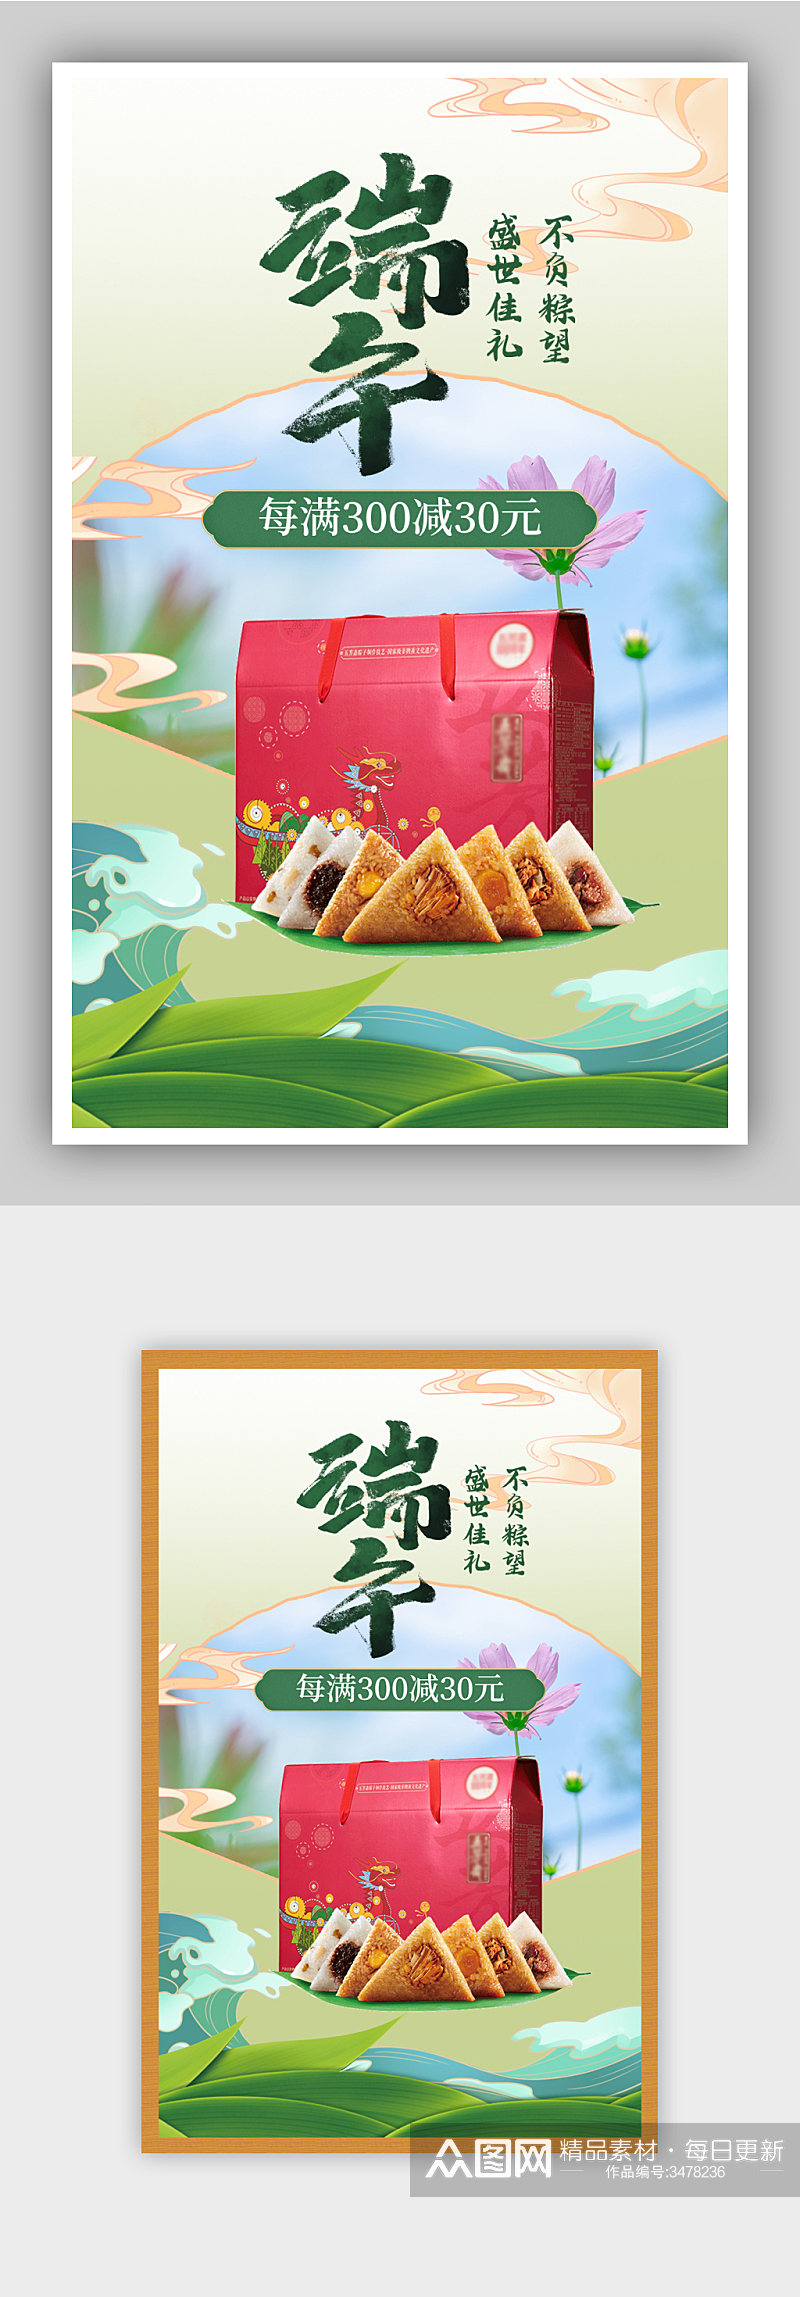 创意淡雅粽子礼盒中国风促销海报素材